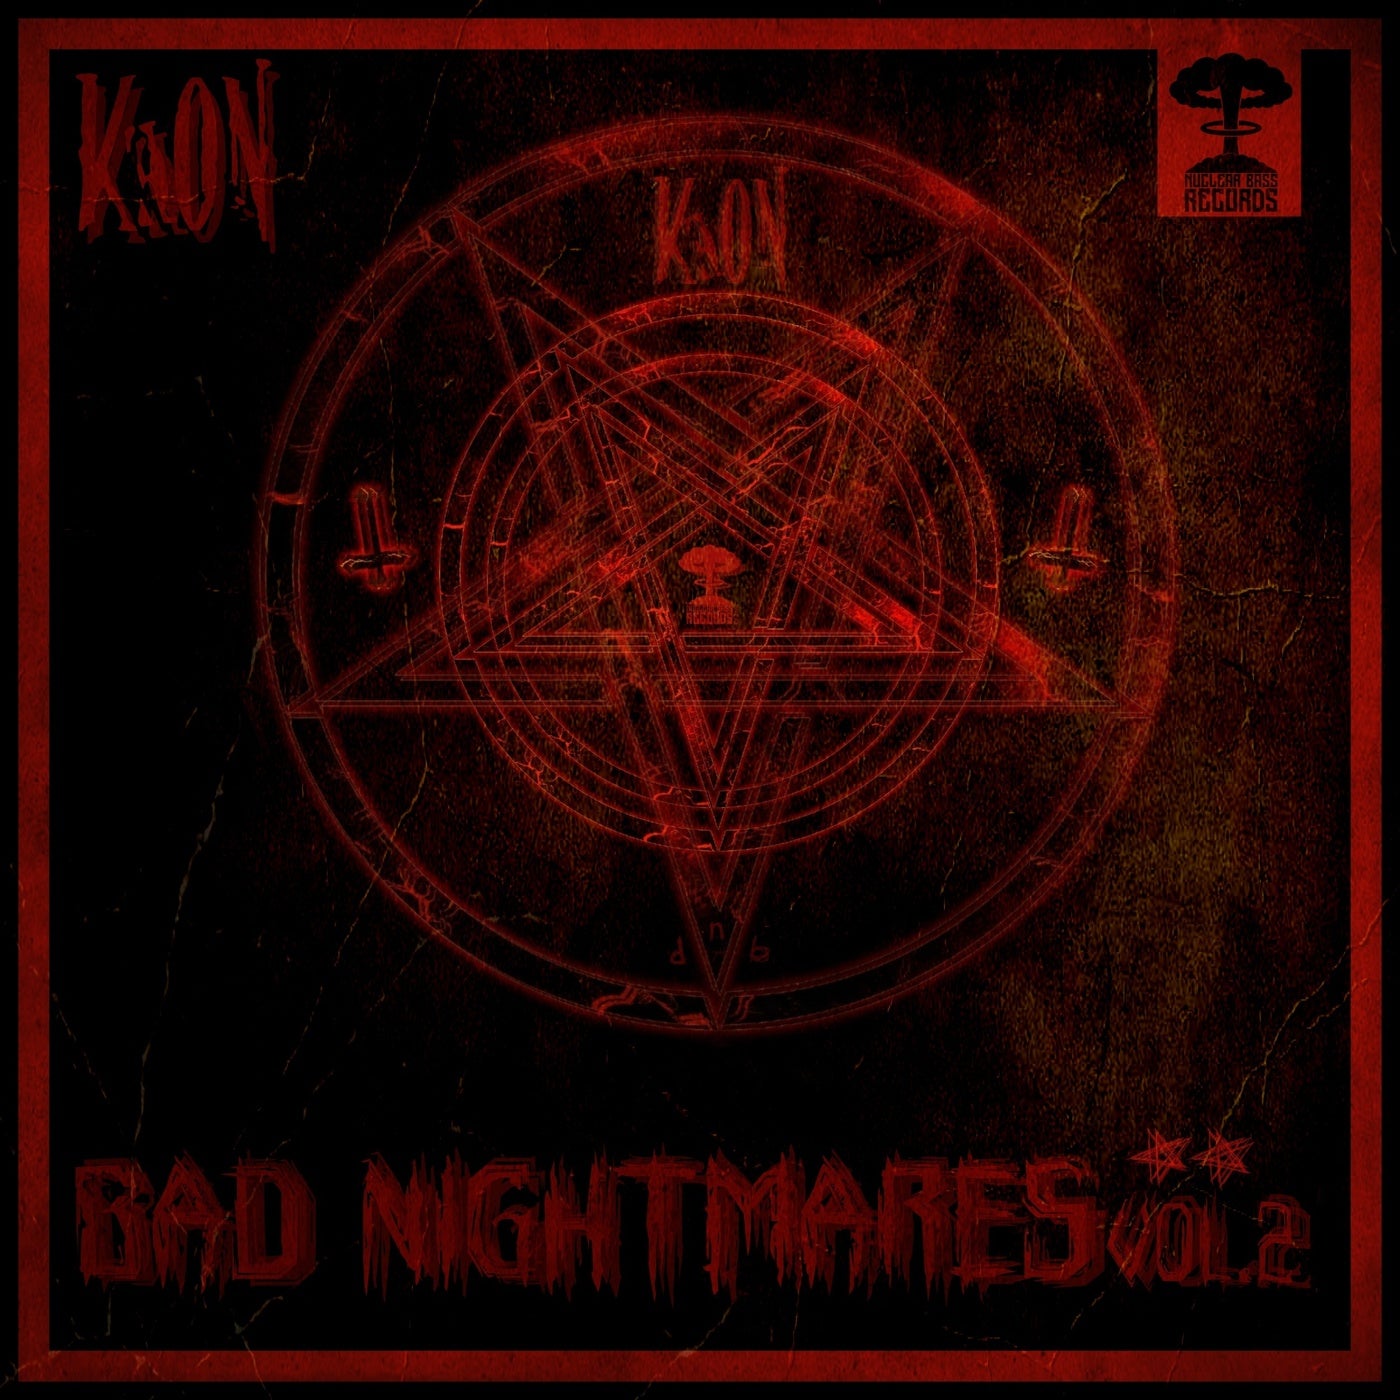 Bad Nightmares Vol 2